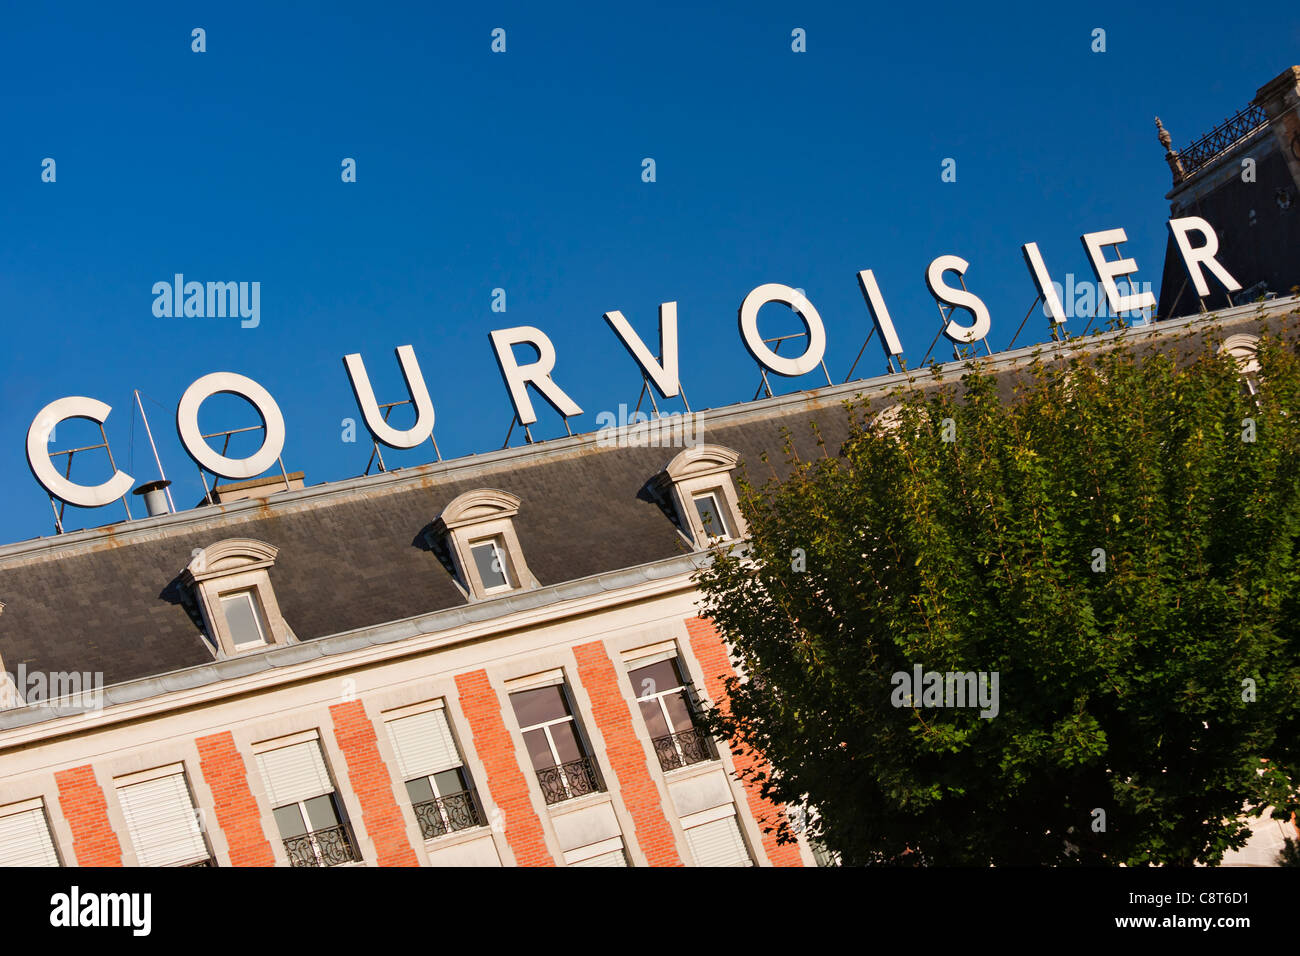 Le siège social de la maison de cognac Courvoisier dans la ville de Jarnac, Charente, France Banque D'Images